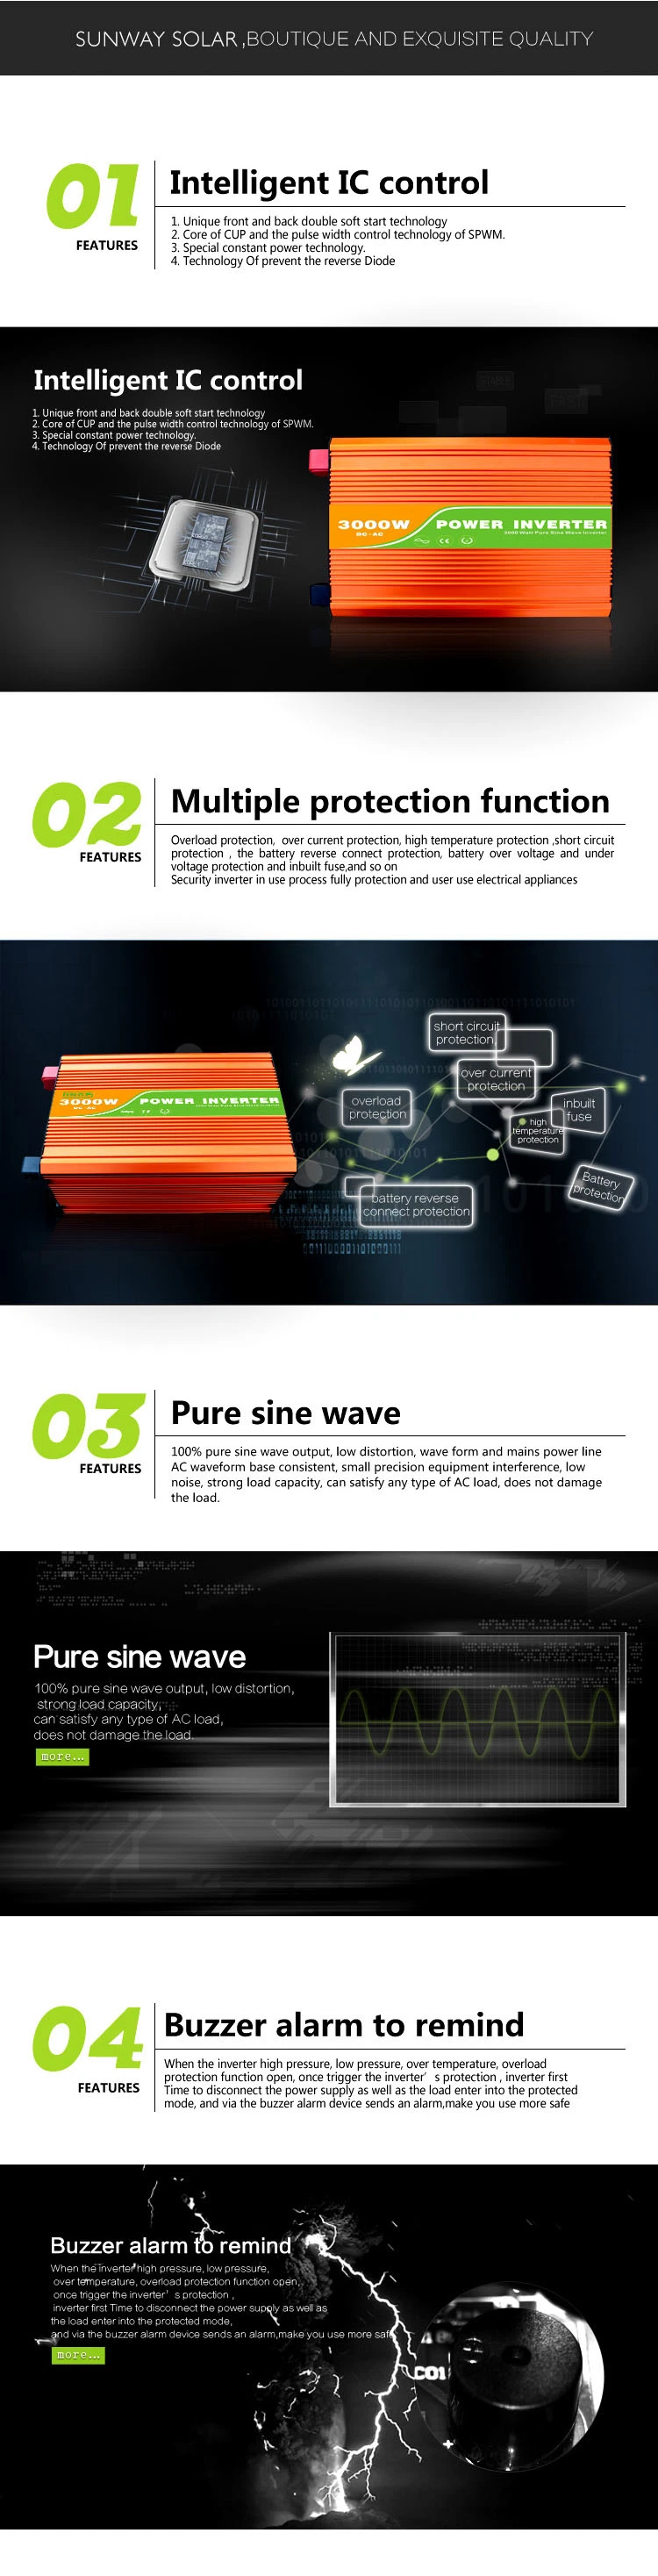 2.5kw 3kw Pure Sine Wave Power Inverter Solar Power Converter